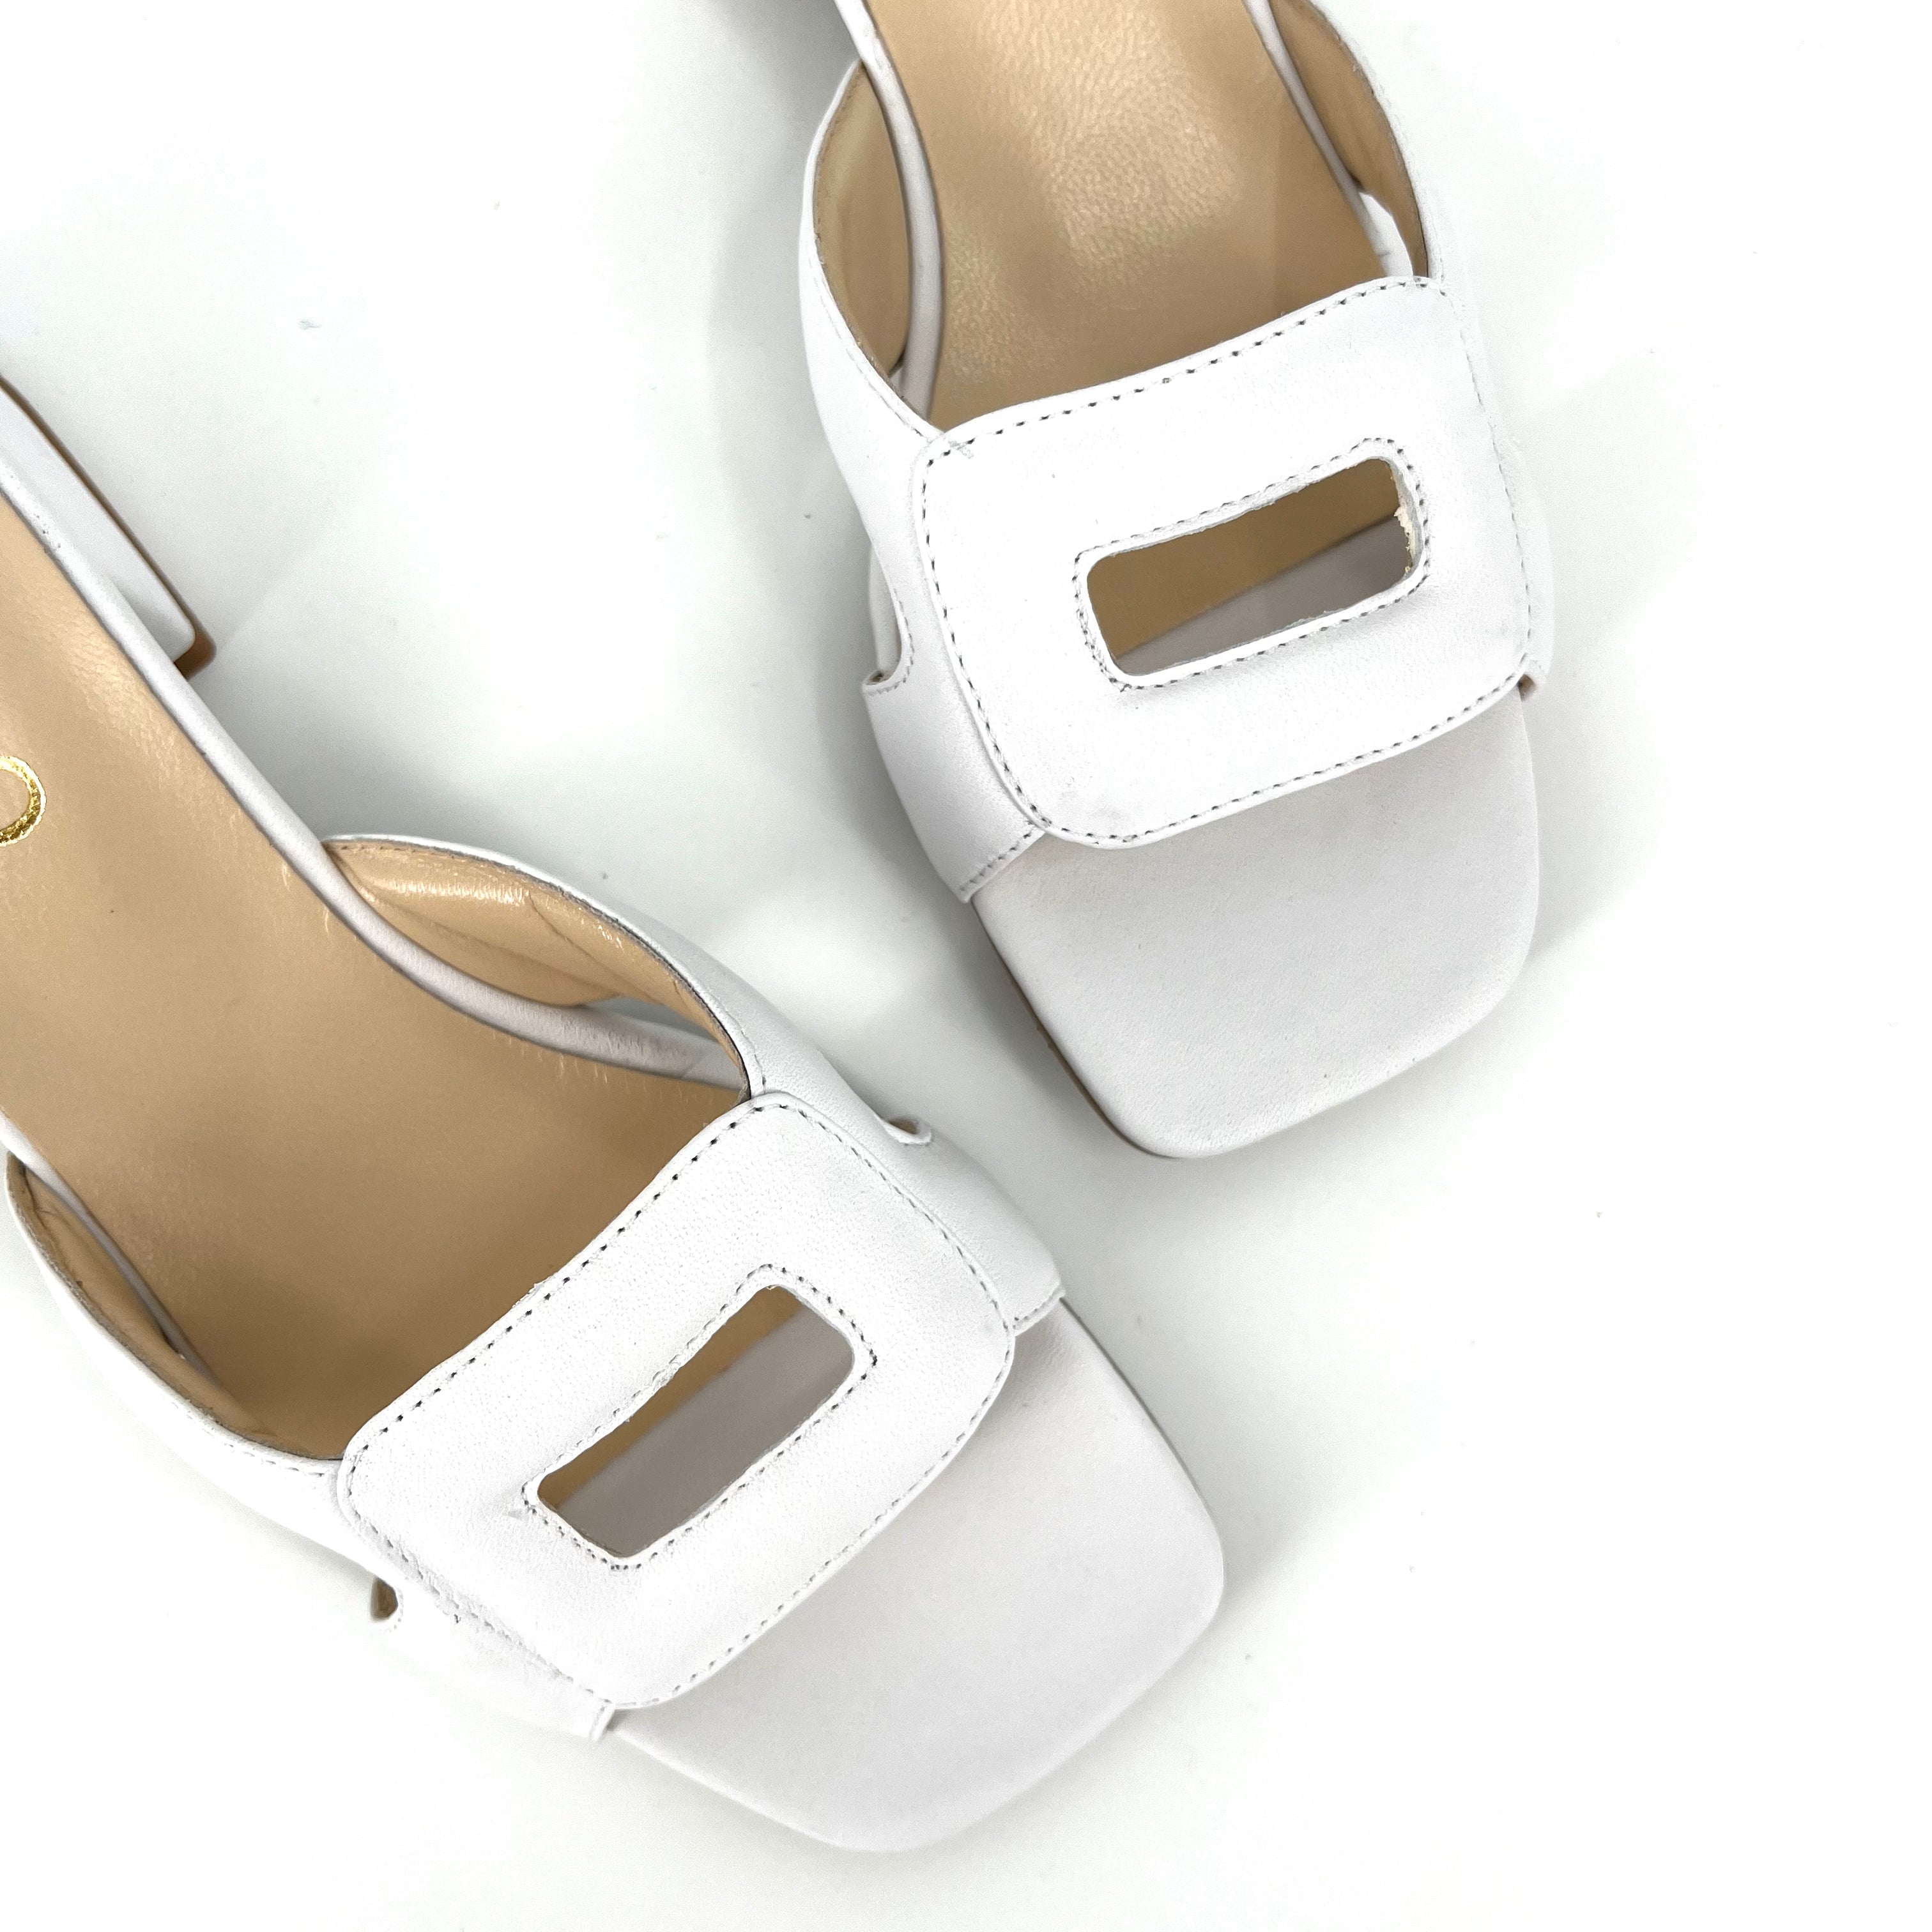 The Rectangle Slide Sandal in White